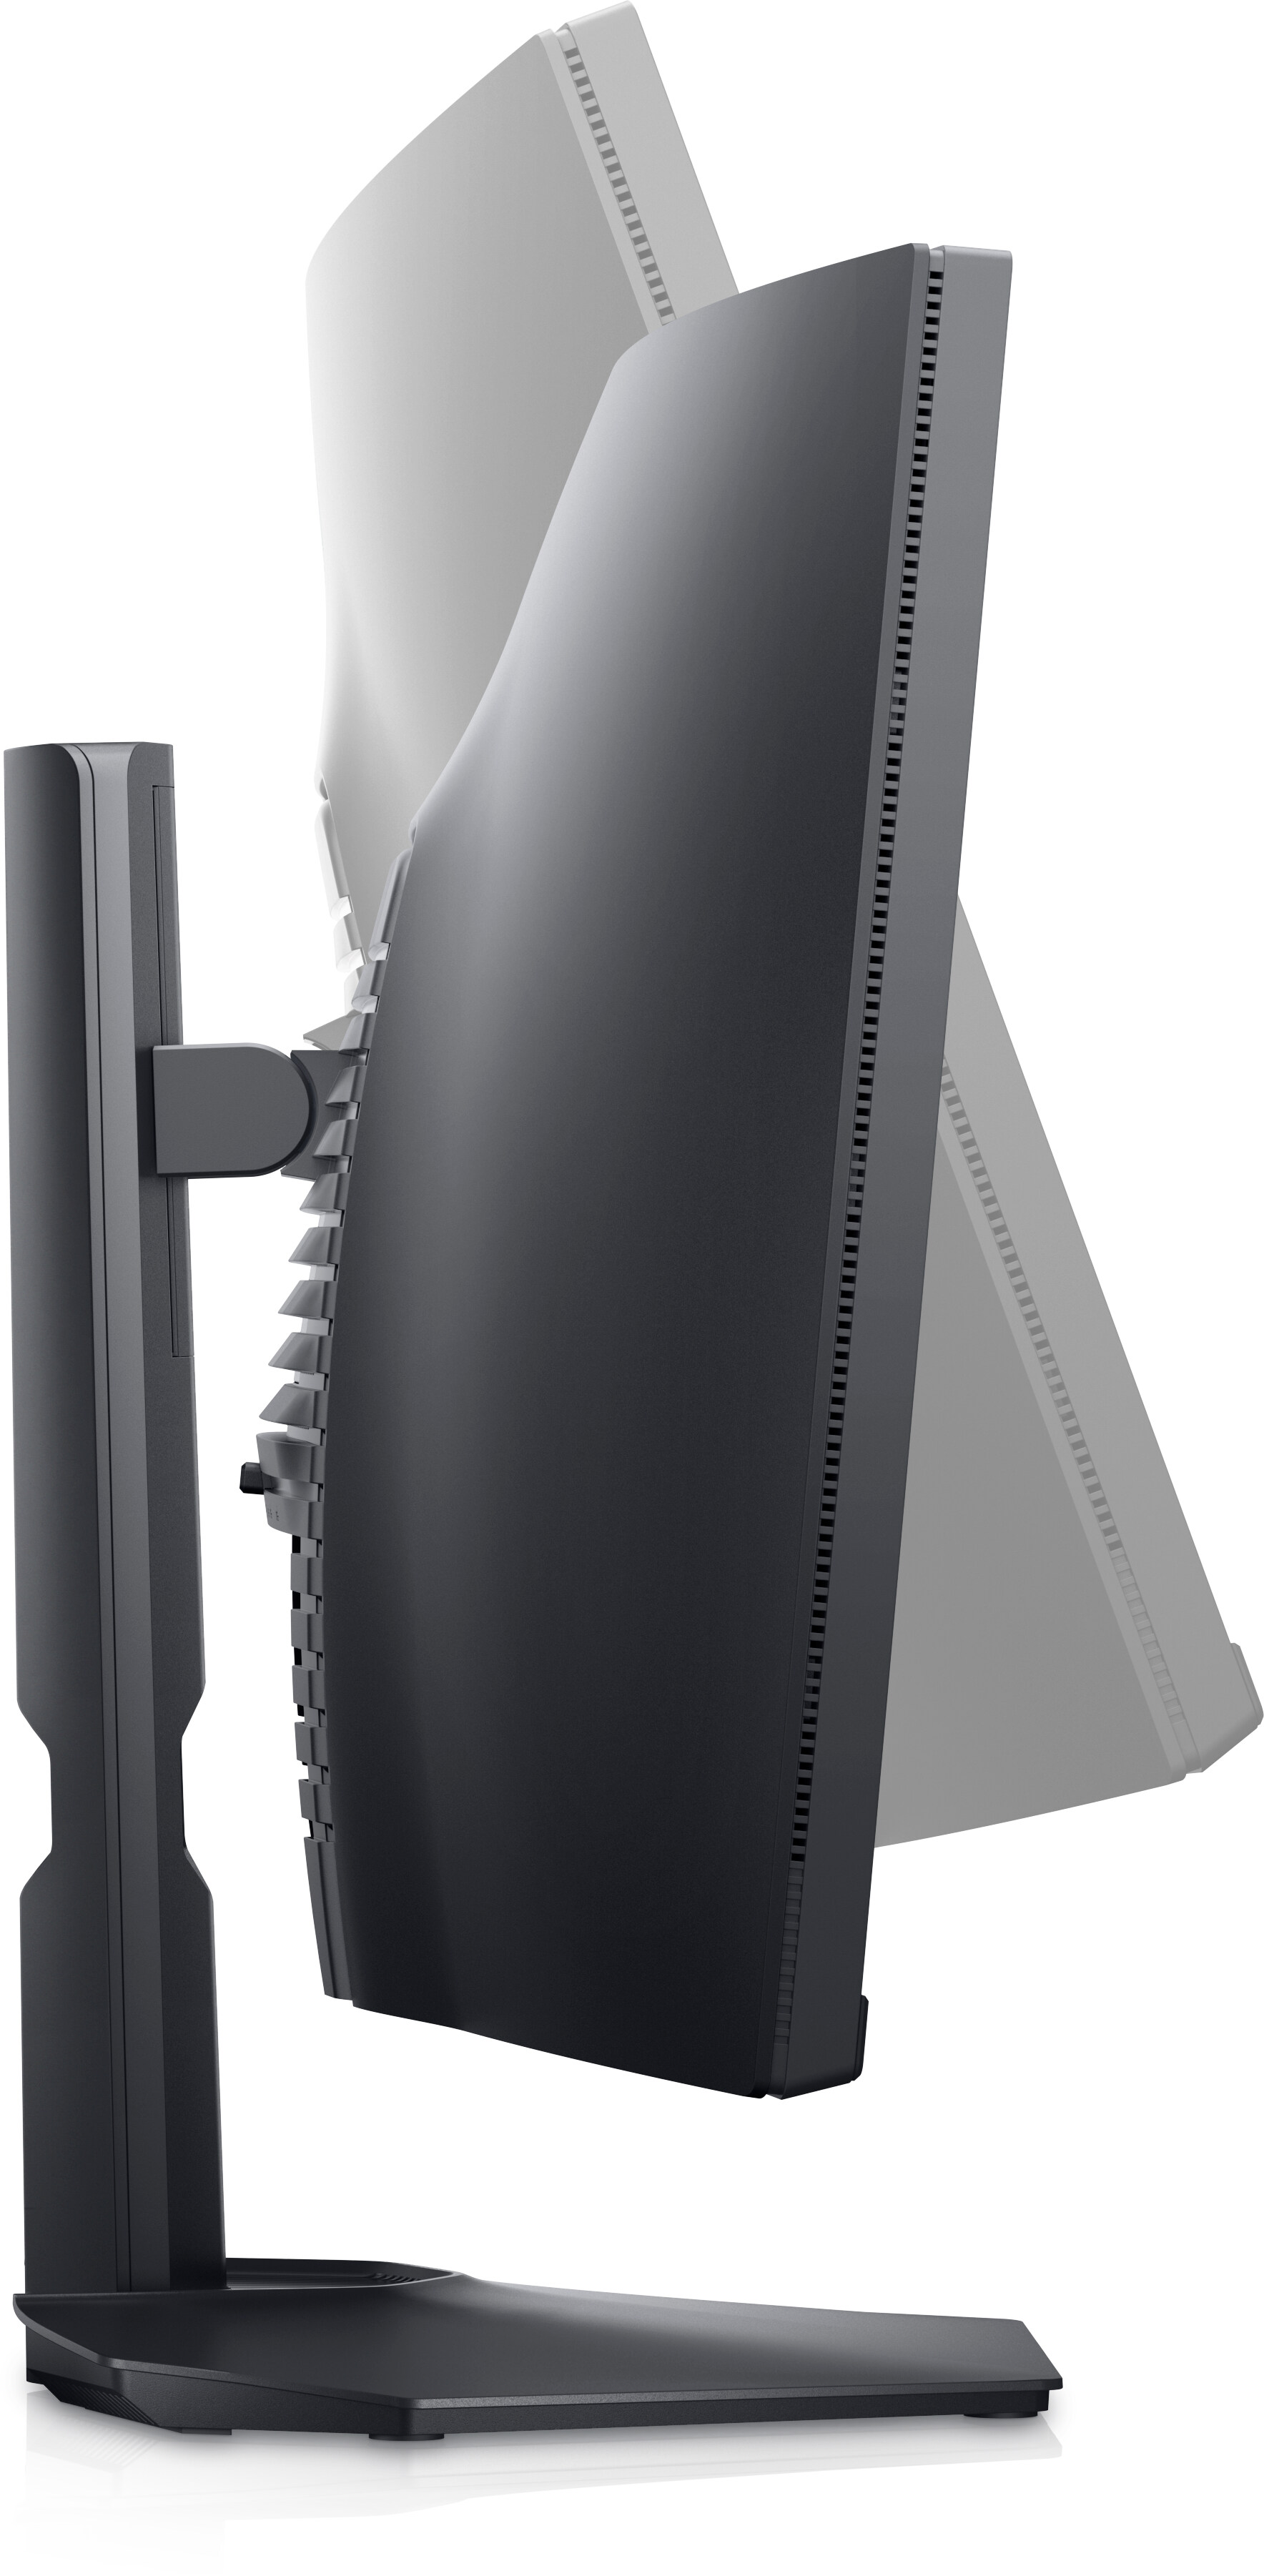 Ecran PC Gaming Dell S3422DWG 34 Ecran incurvé WQHD Noir